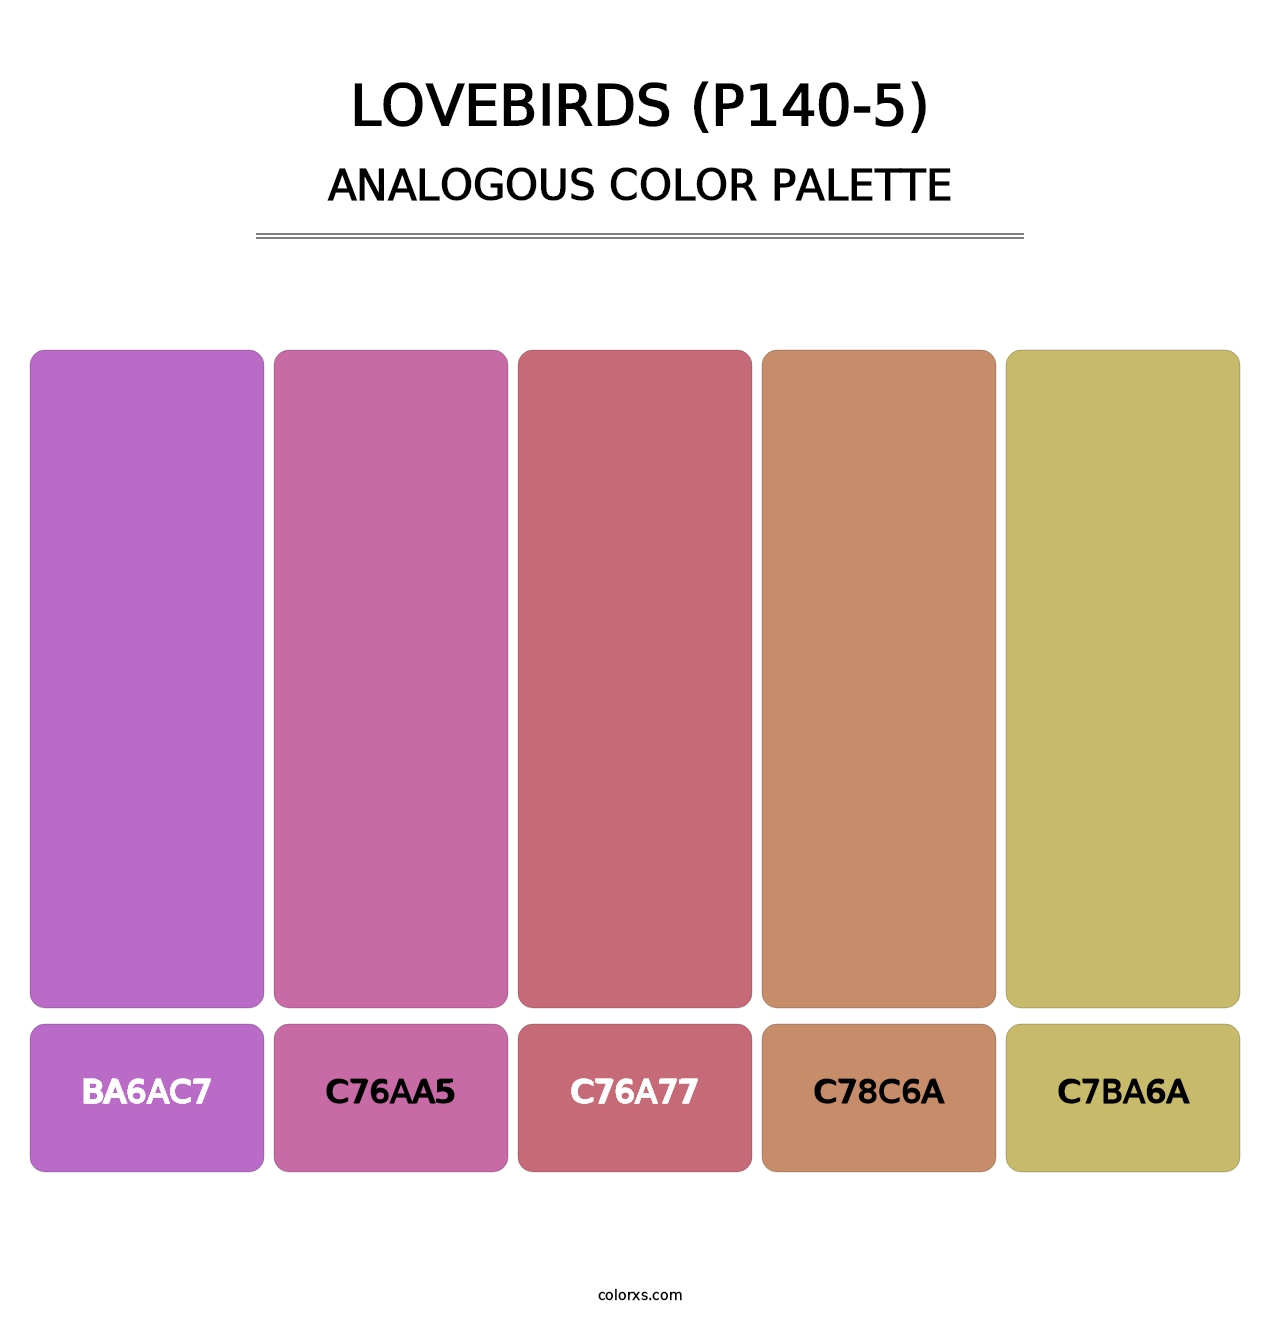 Lovebirds (P140-5) - Analogous Color Palette